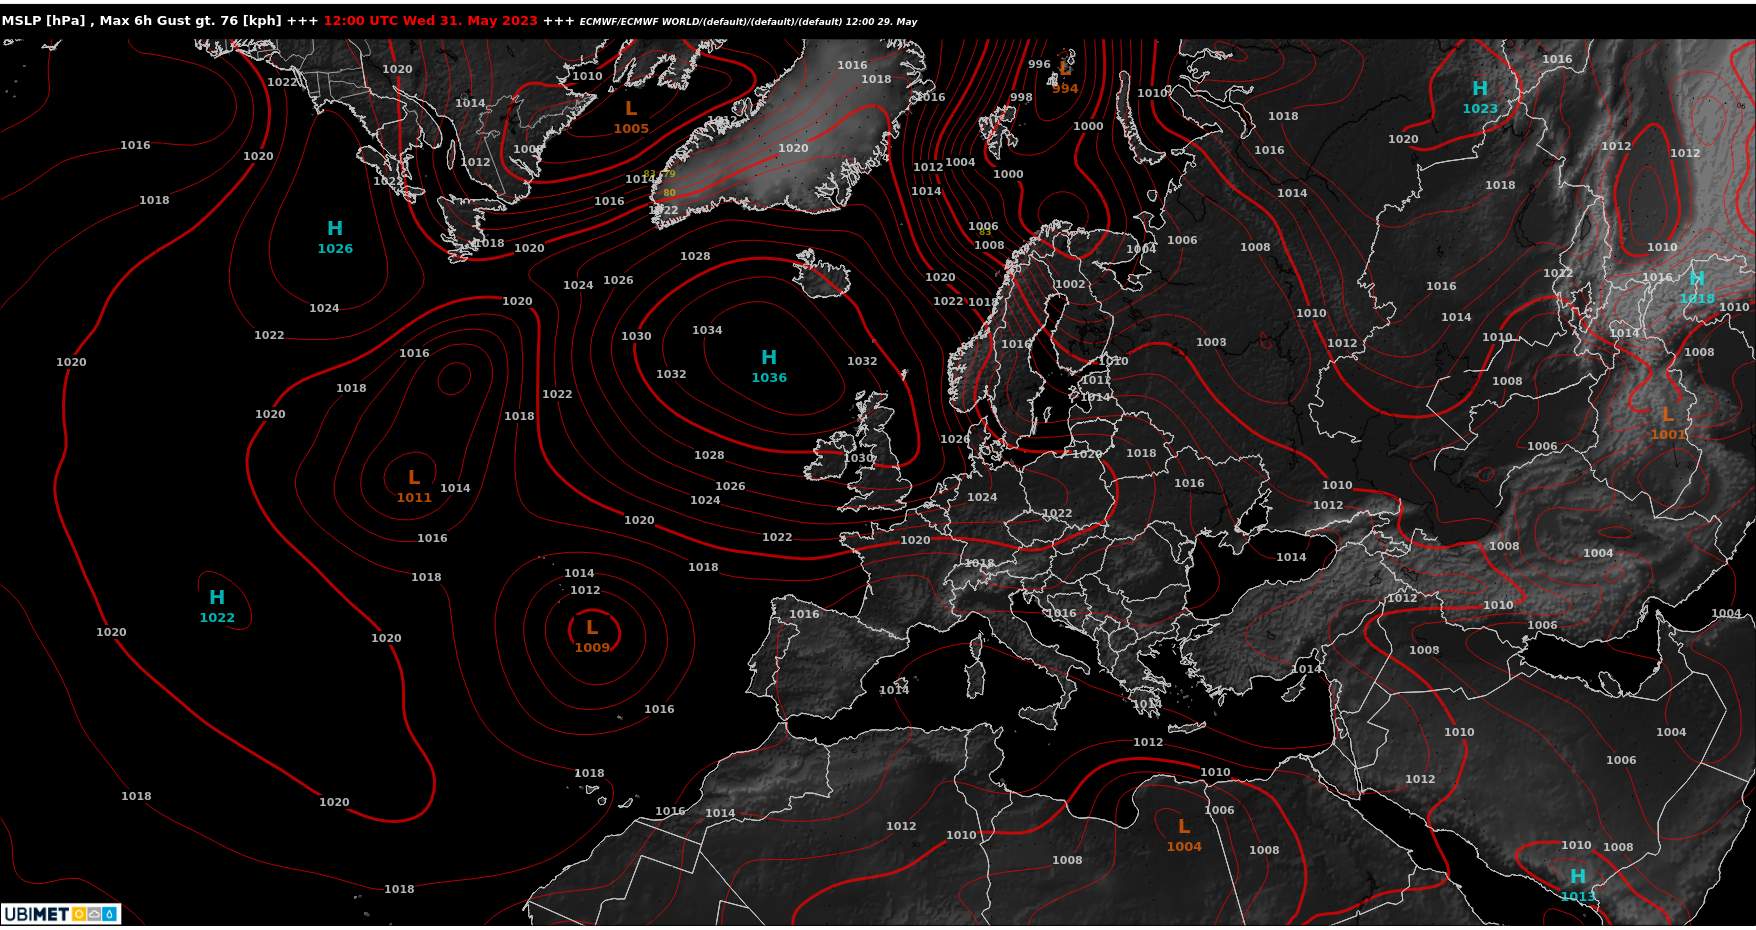 Abb. 1: Hoch Wiola im Atlantik nordwestlich von Irland bestimmt unter der Woche unser Wetter; Quelle: Ubimet